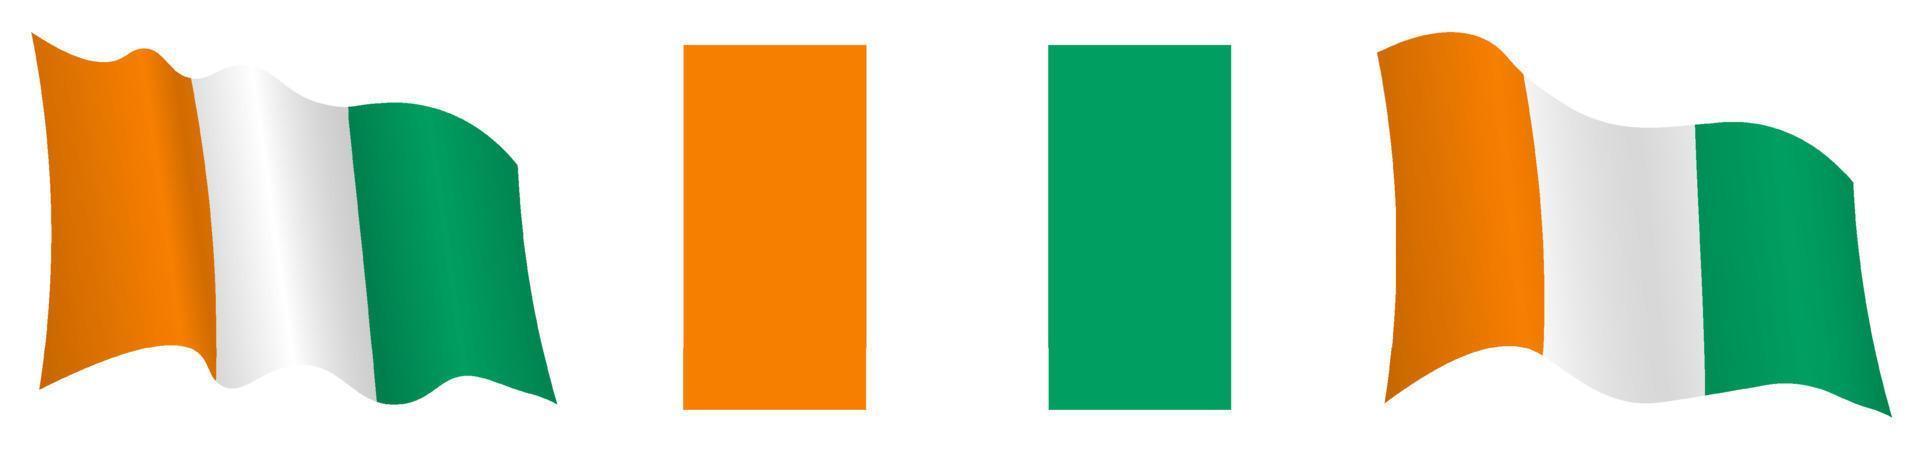 Côte d'Ivoire-Flagge in statischer Position und in Bewegung, flatternd im Wind in genauen Farben und Größen, auf weißem Hintergrund vektor